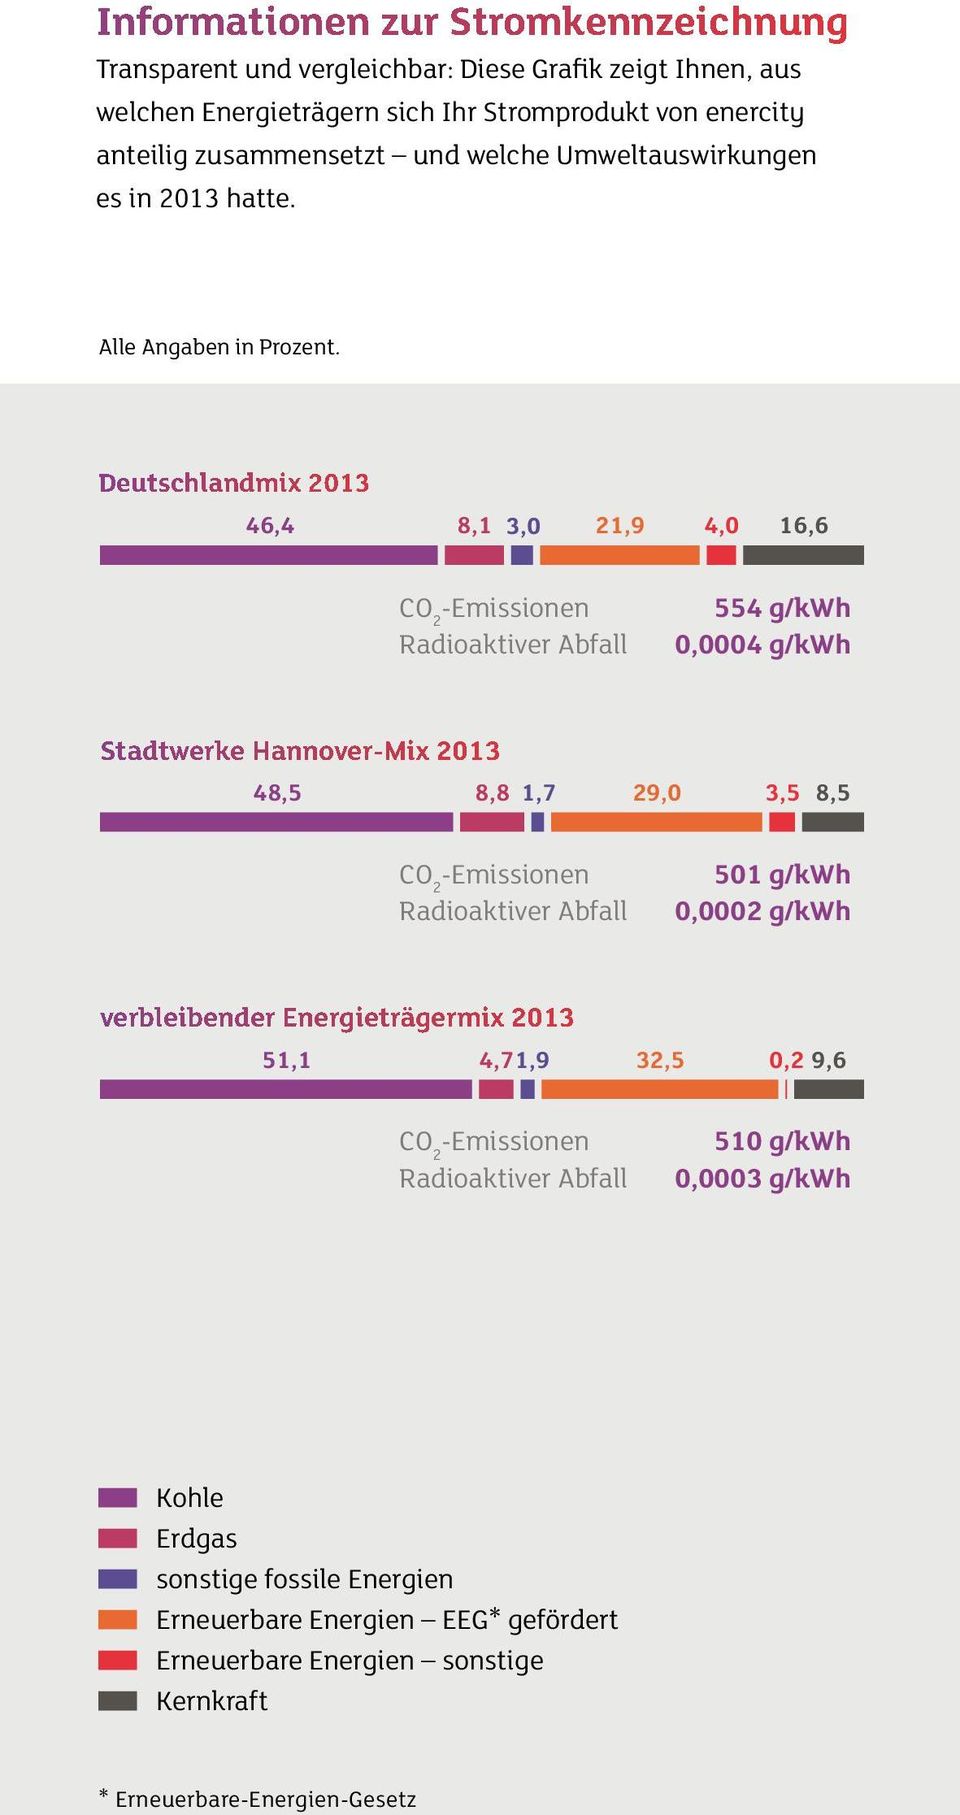 Deutschlandmix 2013 46,4 8,1 3,0 21,9 4,0 16,6 CO 2 -Emissionen Radioaktiver Abfall 554 g/kwh 0,0004 g/kwh Stadtwerke Hannover-Mix 2013 48,5 8,8 1,7 29,0 3,5 8,5 CO 2 -Emissionen